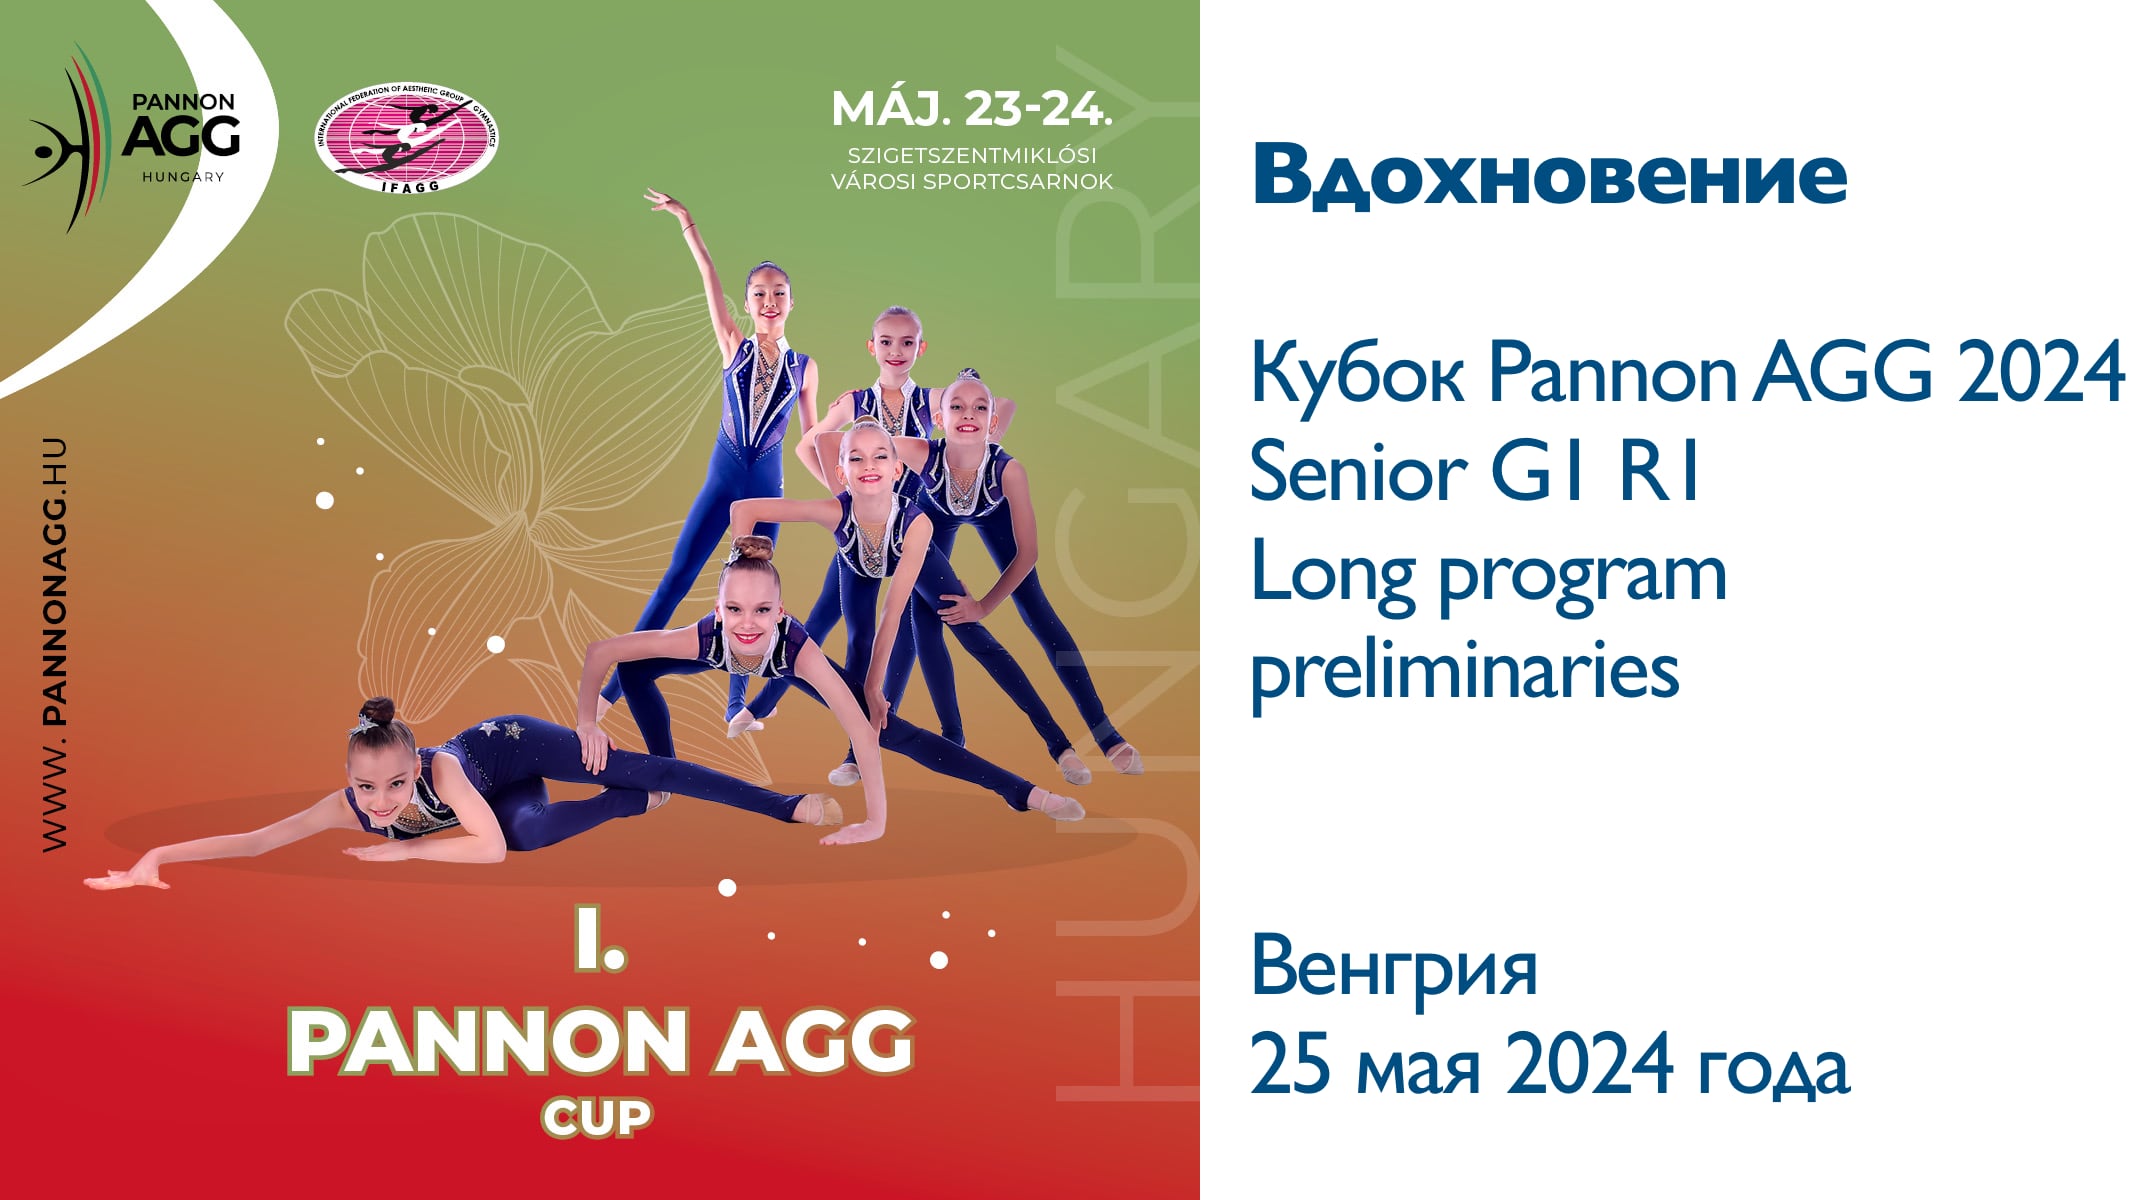 Вдохновение, предварительные соревнования, Кубок Panon AGG 2024, Венгрия